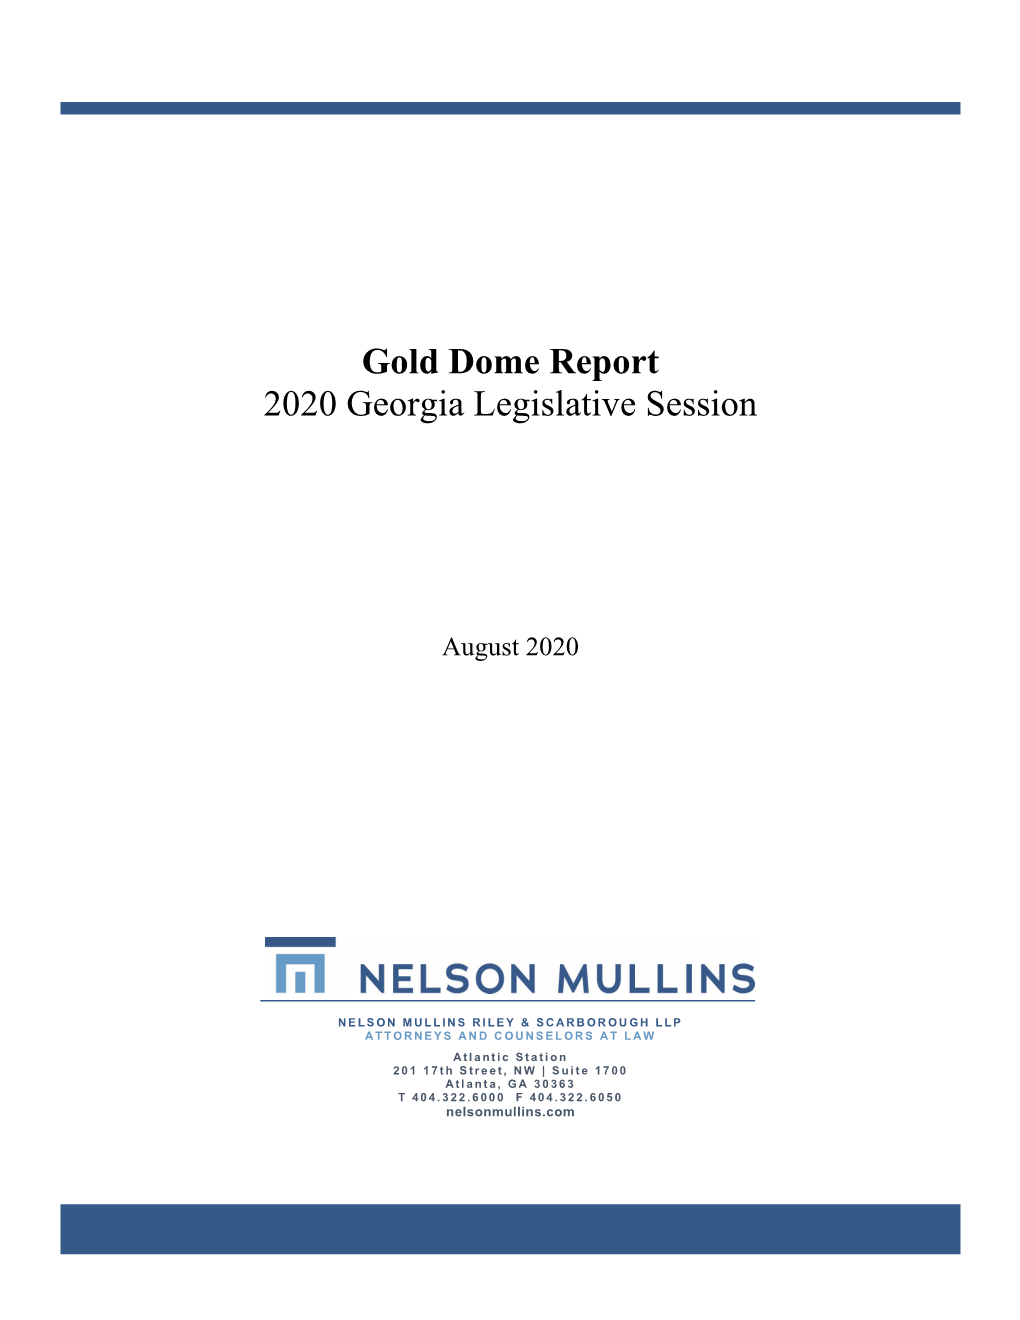 Read the Gold Dome Report for the 2020 Georgia Legislative Session